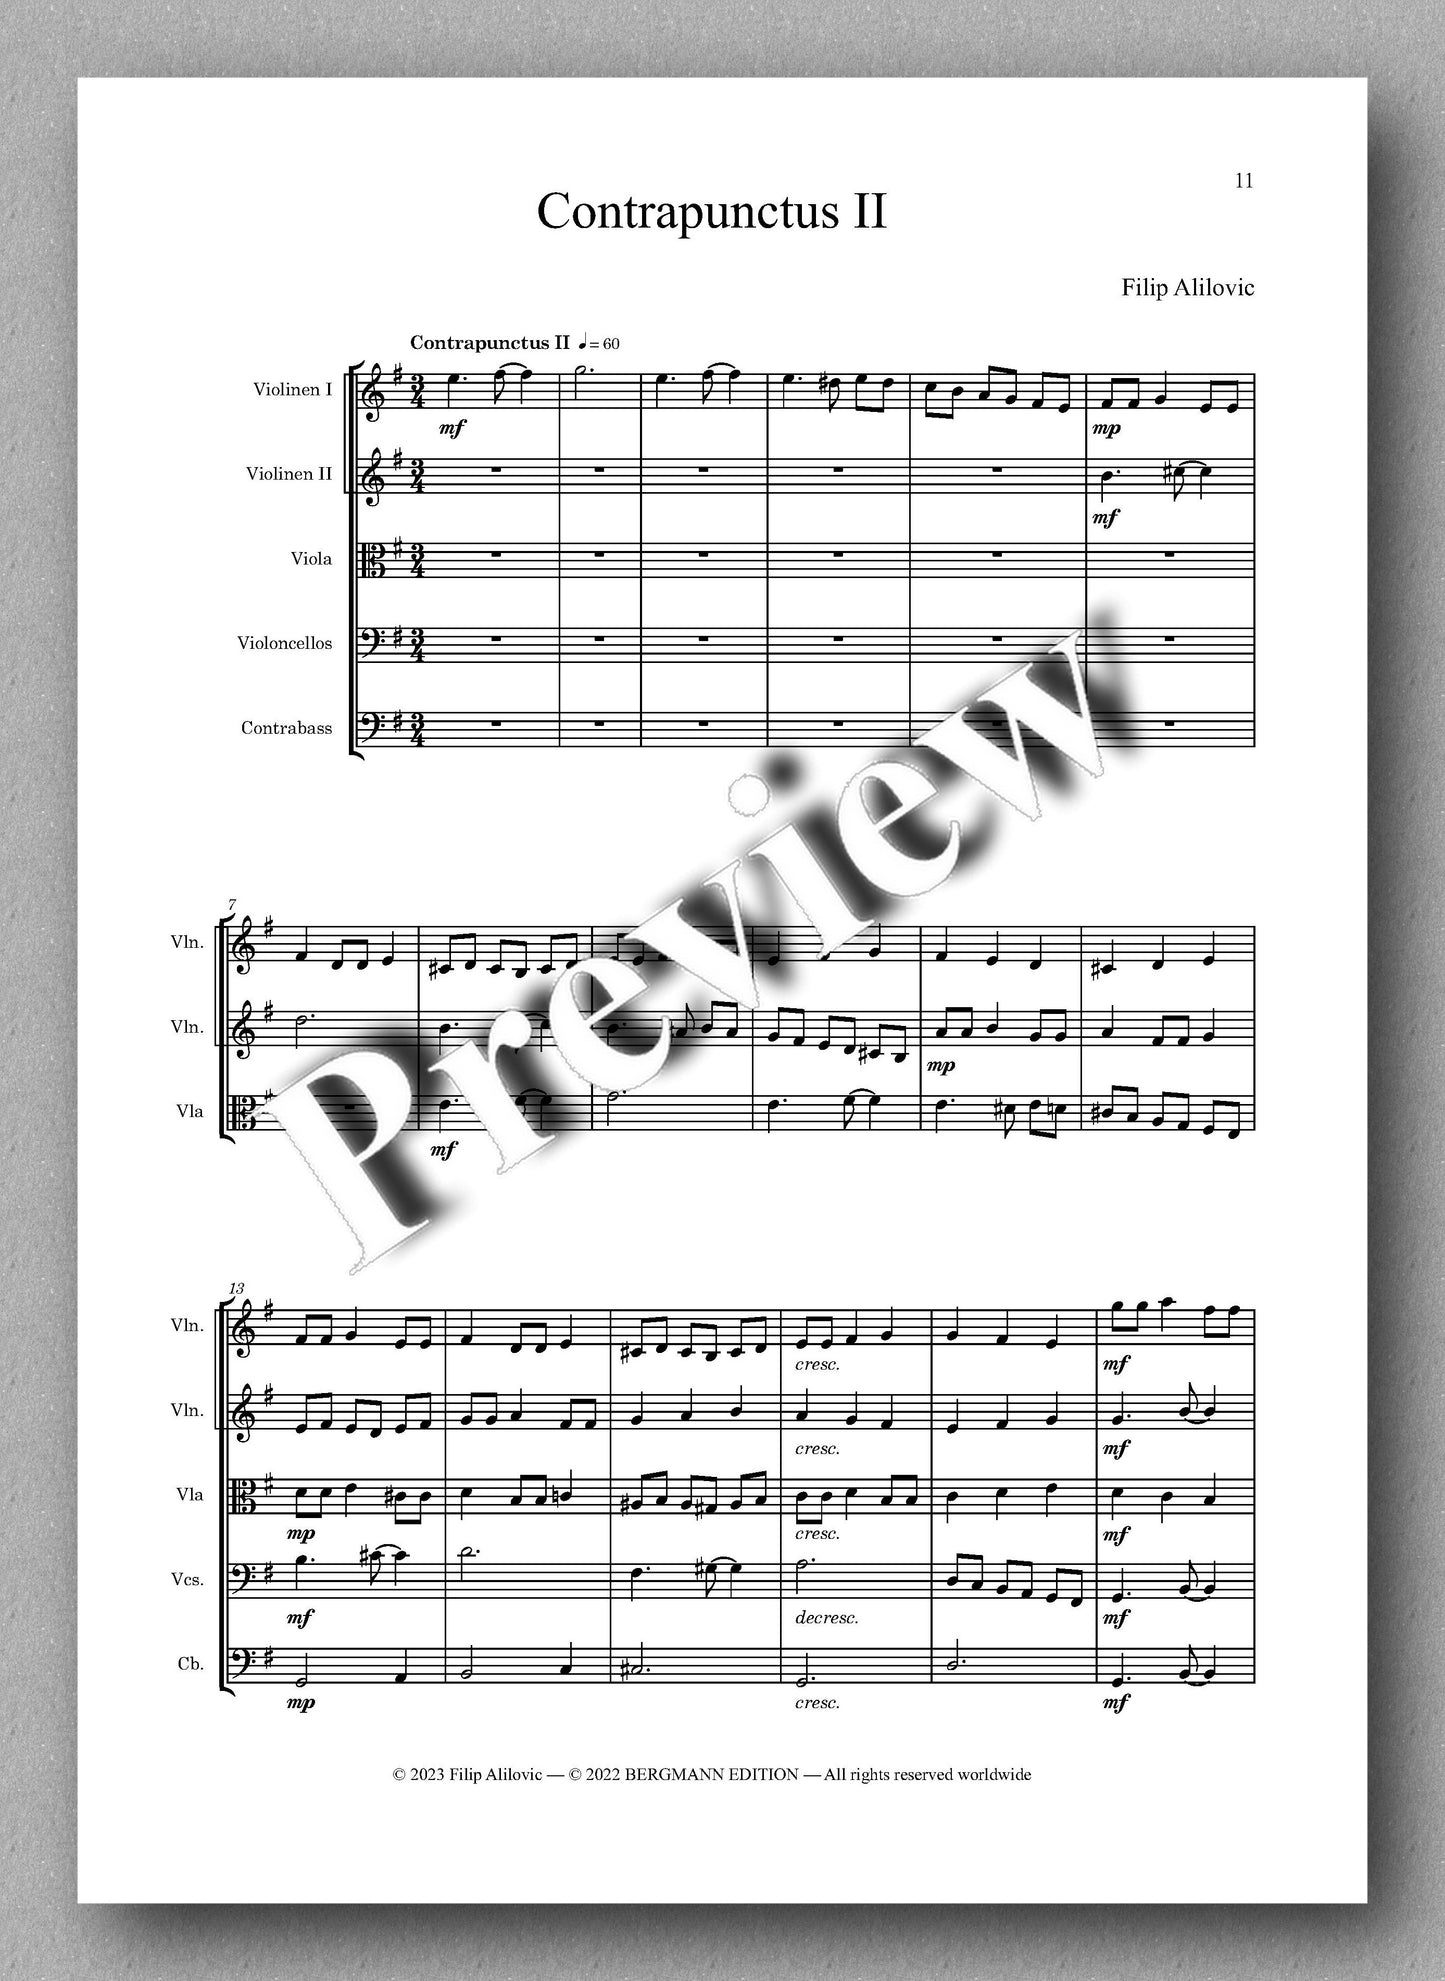 Filip Alilovic, Souvenirs de Berne - preview of the music score 2